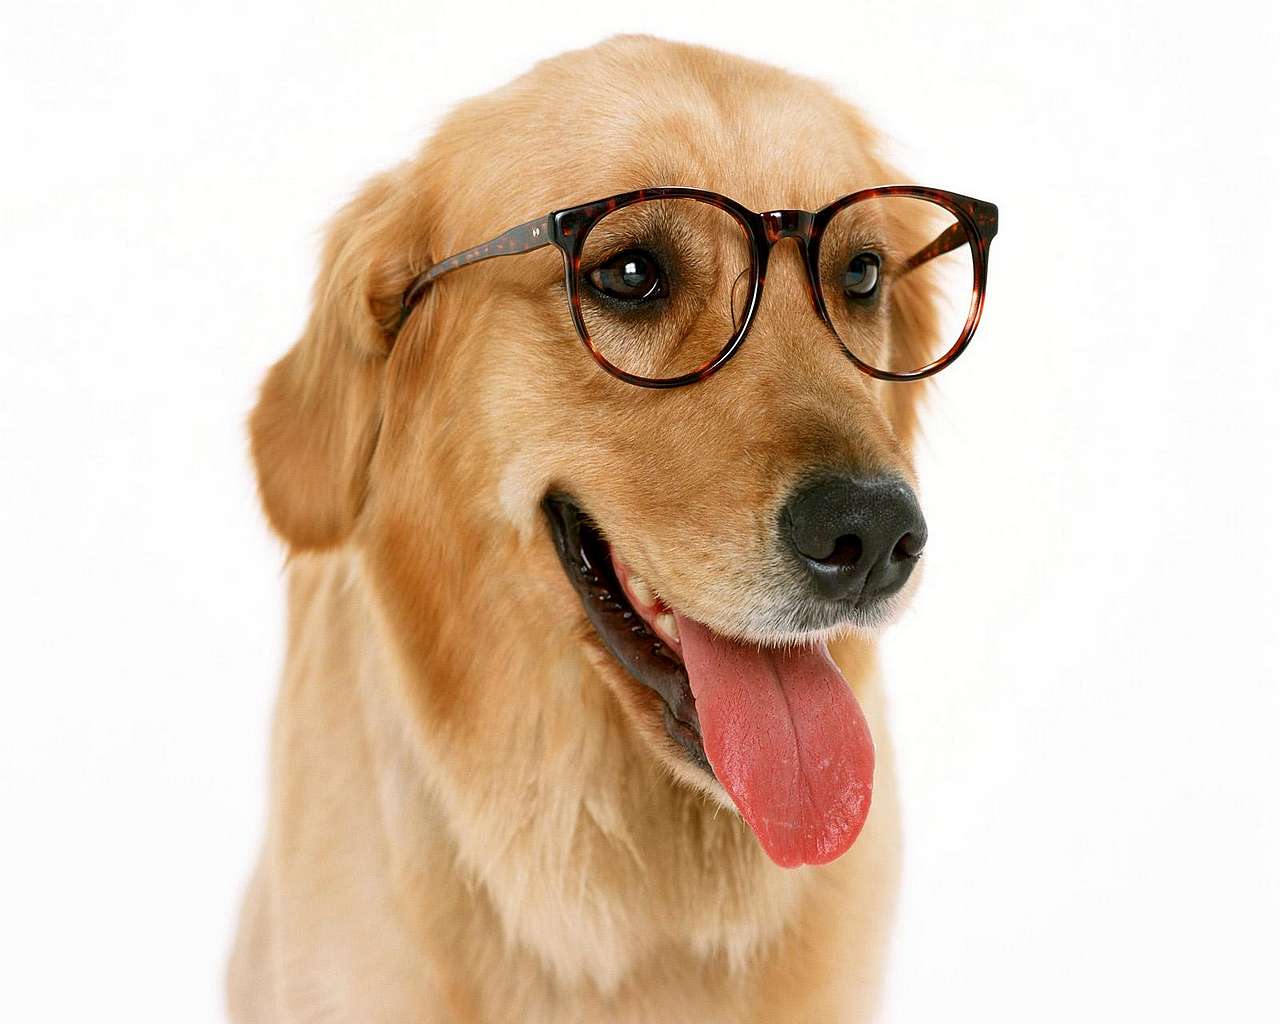 Lenti a contatto e occhiali per gatti e cani: novità per curare gli occhi